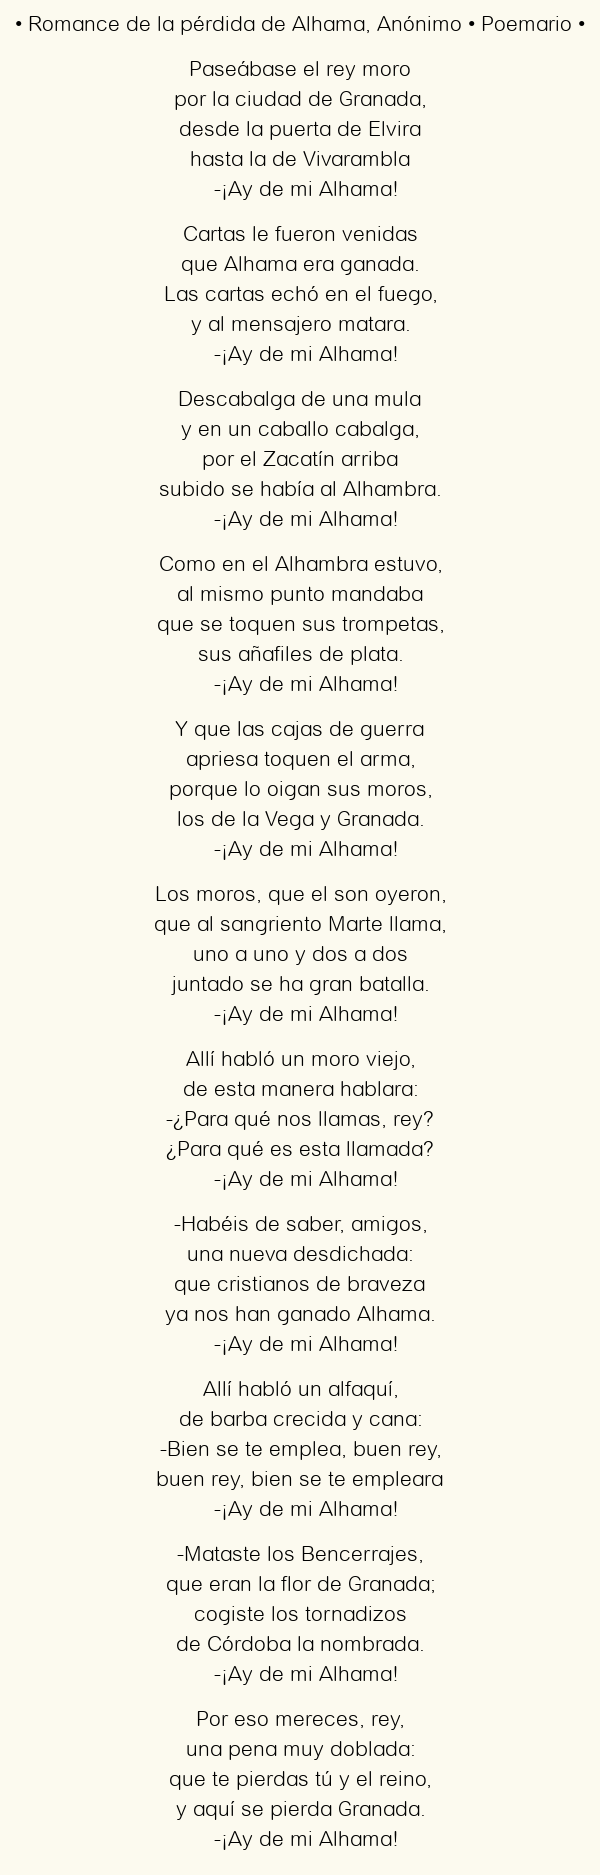 Imagen con el poema Romance de la pérdida de Alhama, por Anónimo